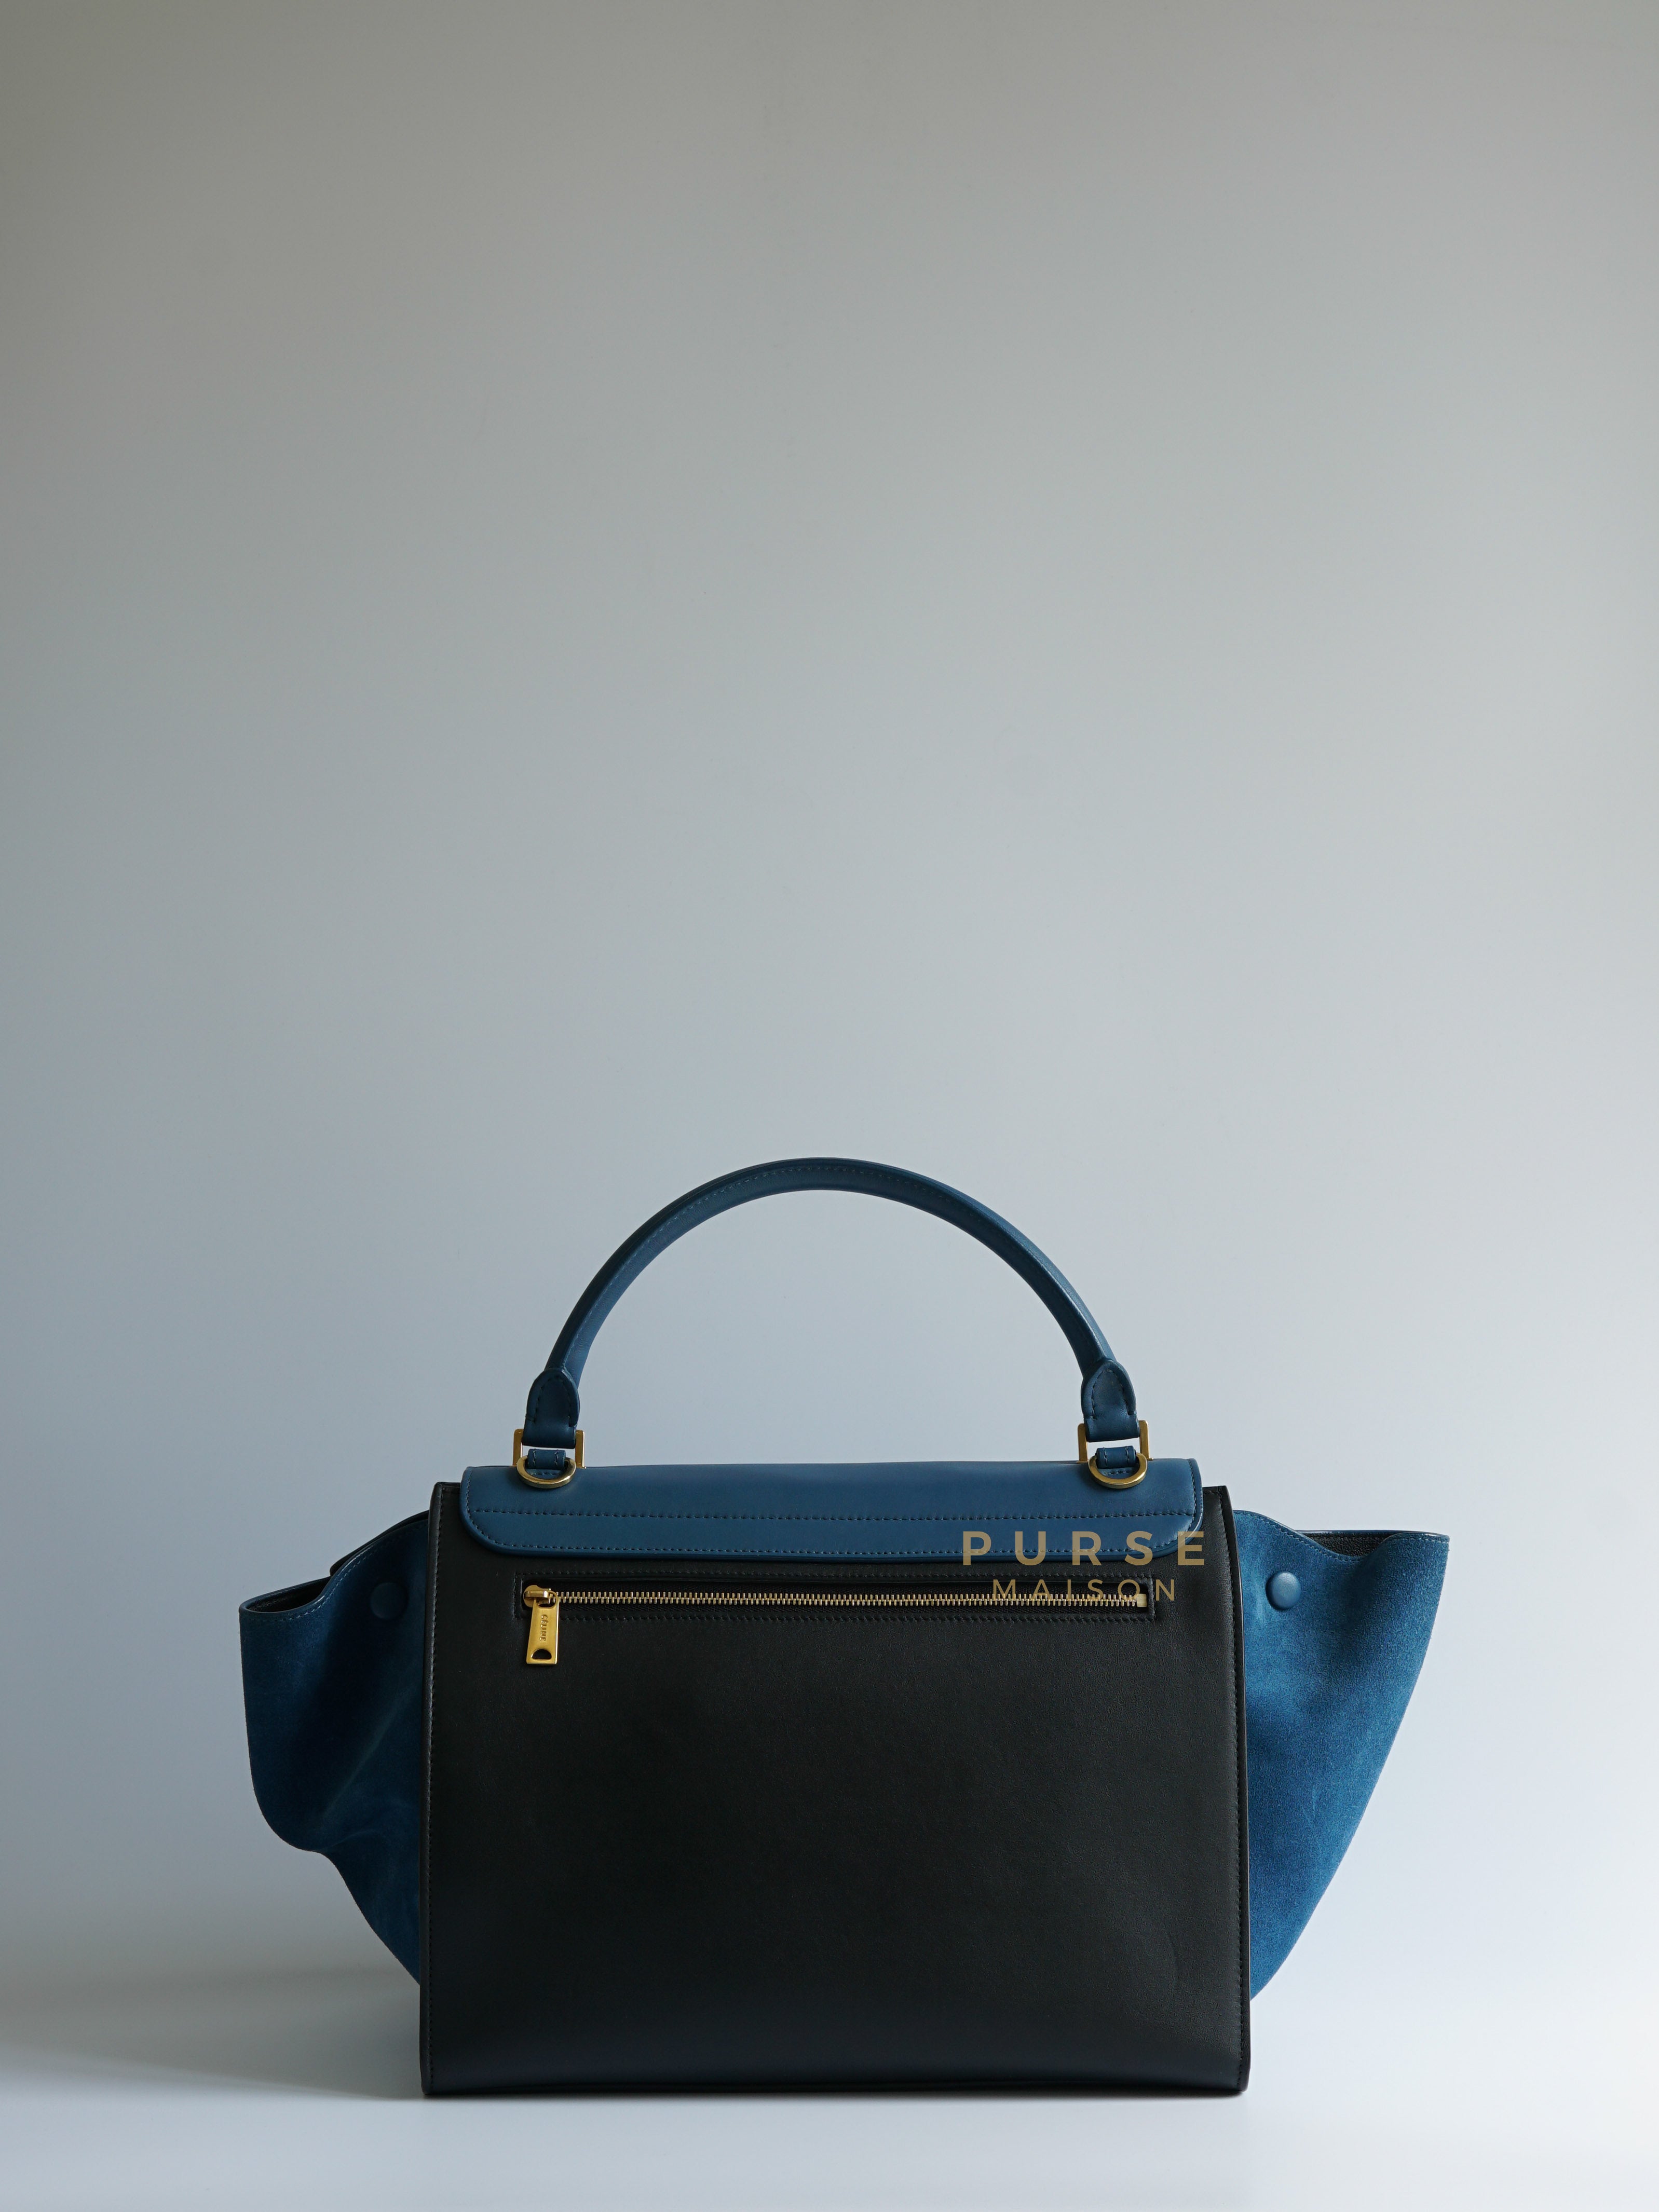 Trapeze Bi-color (Blue/Black) Calfskin Suede Medium Bag | Purse Maison Luxury Bags Shop